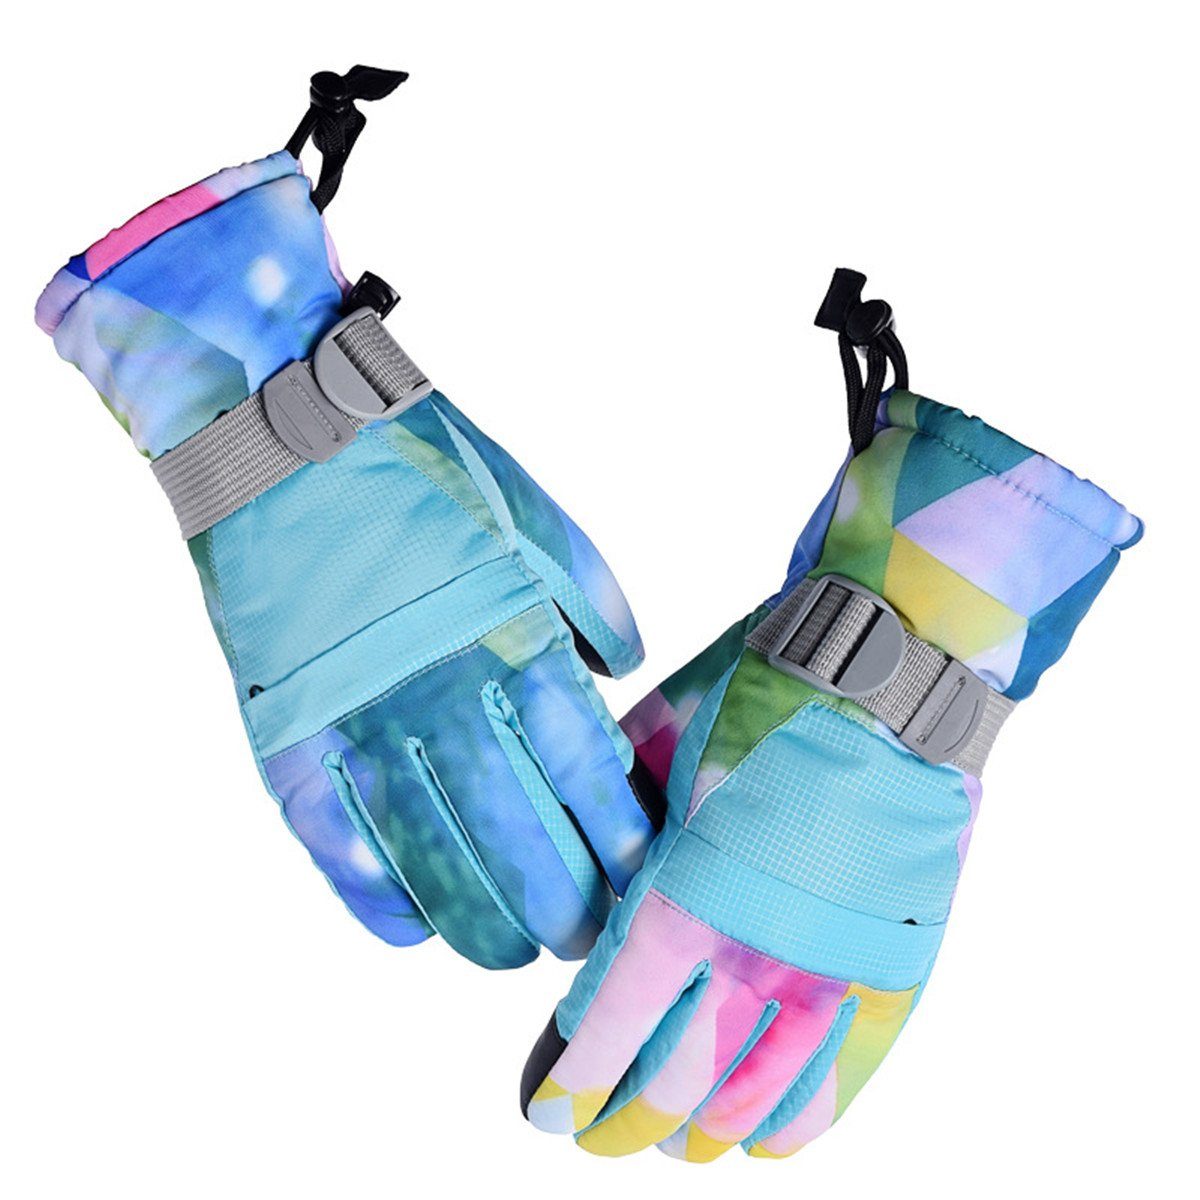 Die Sterne Langlaufhandschuhe Kinder/Männer/Damen Winter-Outdoor-Sport-Snowboard-Handschuhe Narzissenorchidee | Langlaufhandschuhe